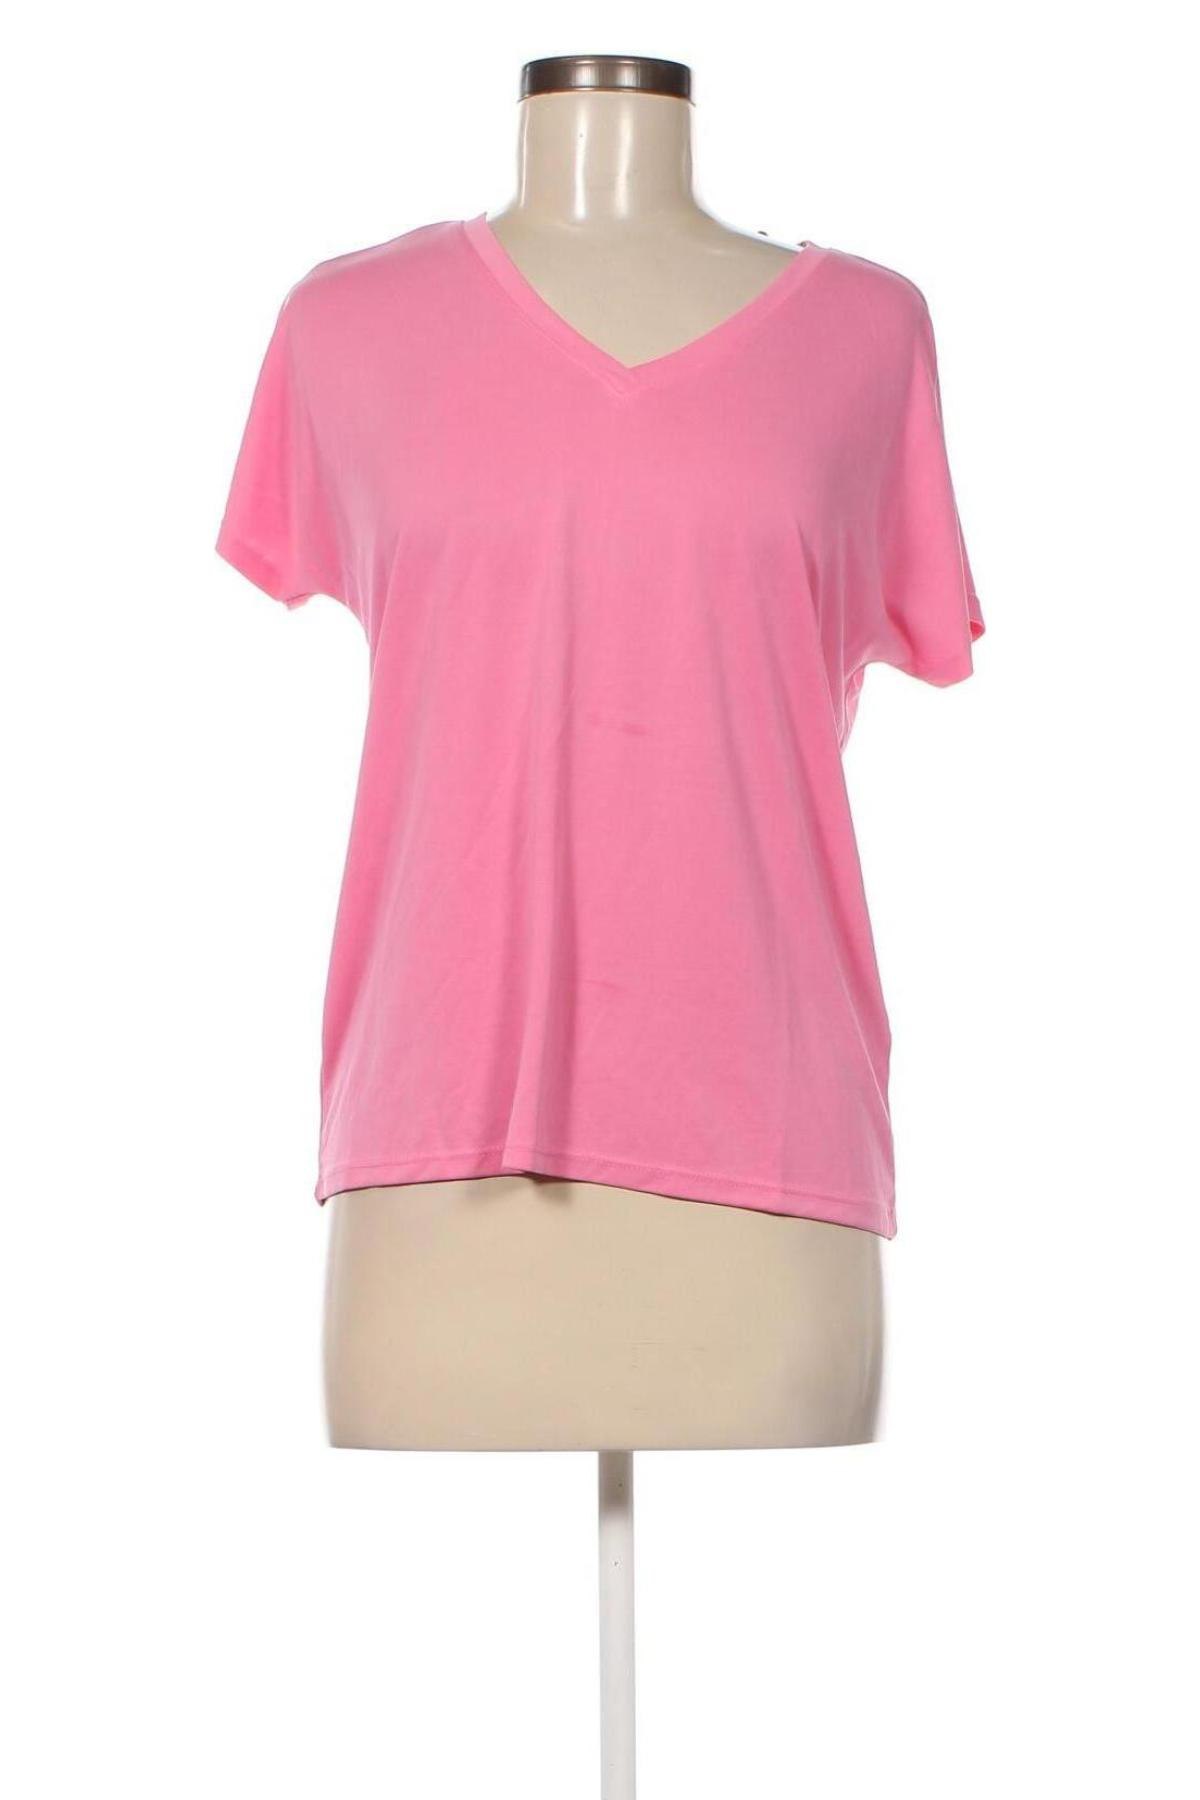 Γυναικεία μπλούζα MSCH, Μέγεθος XS, Χρώμα Ρόζ , Τιμή 5,20 €